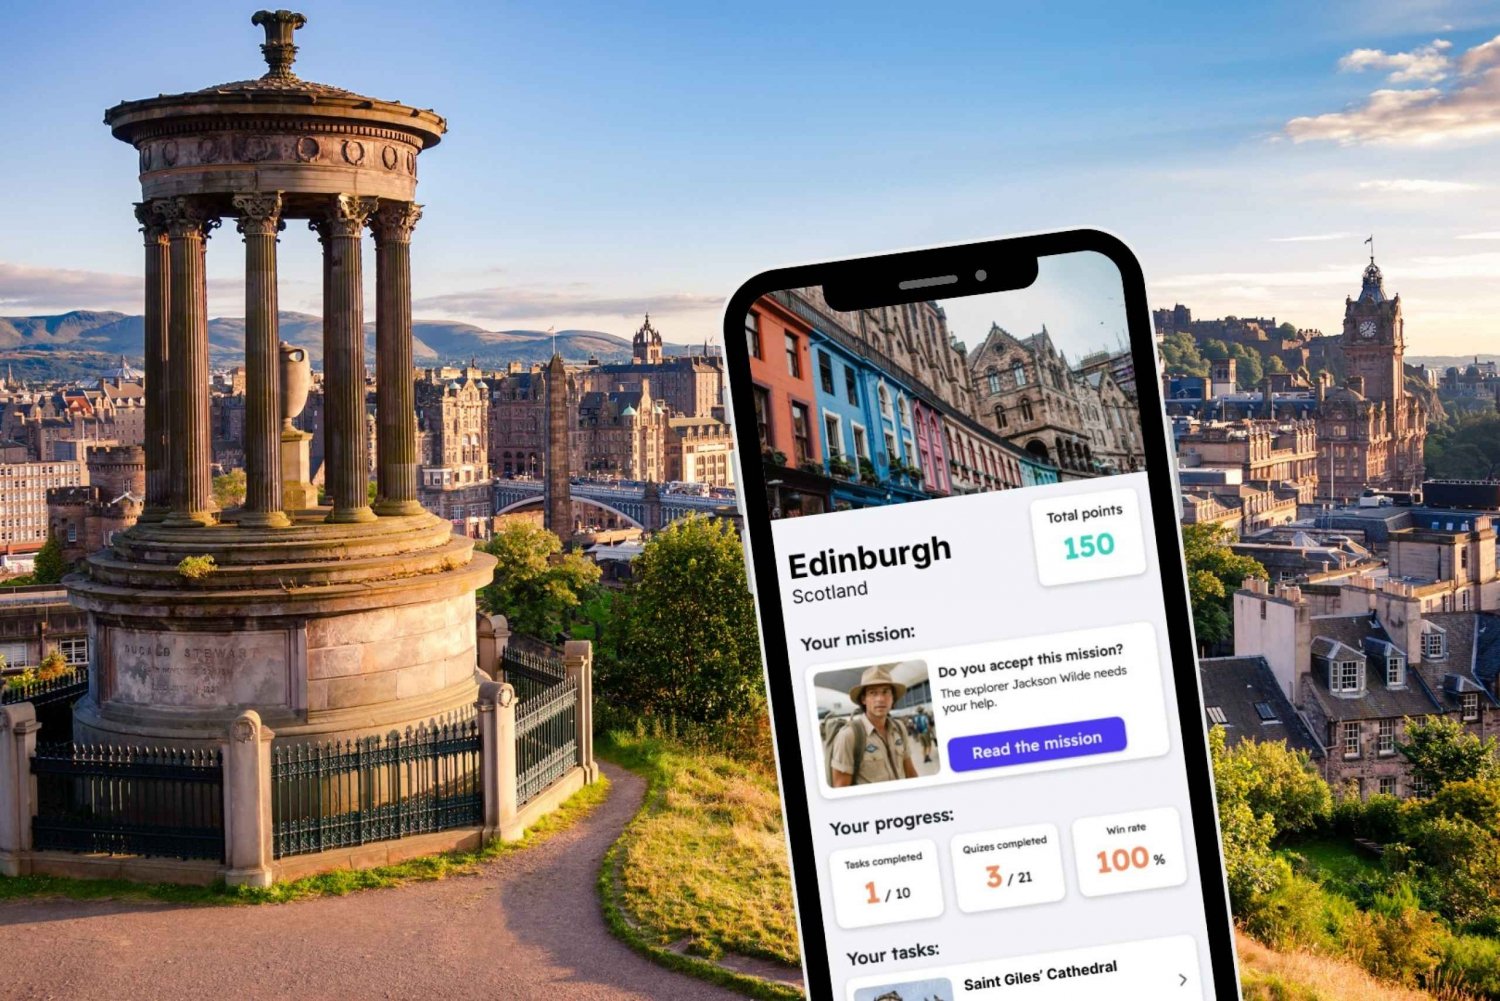 Edimburgo: City Exploration Game and Tour no seu telefone